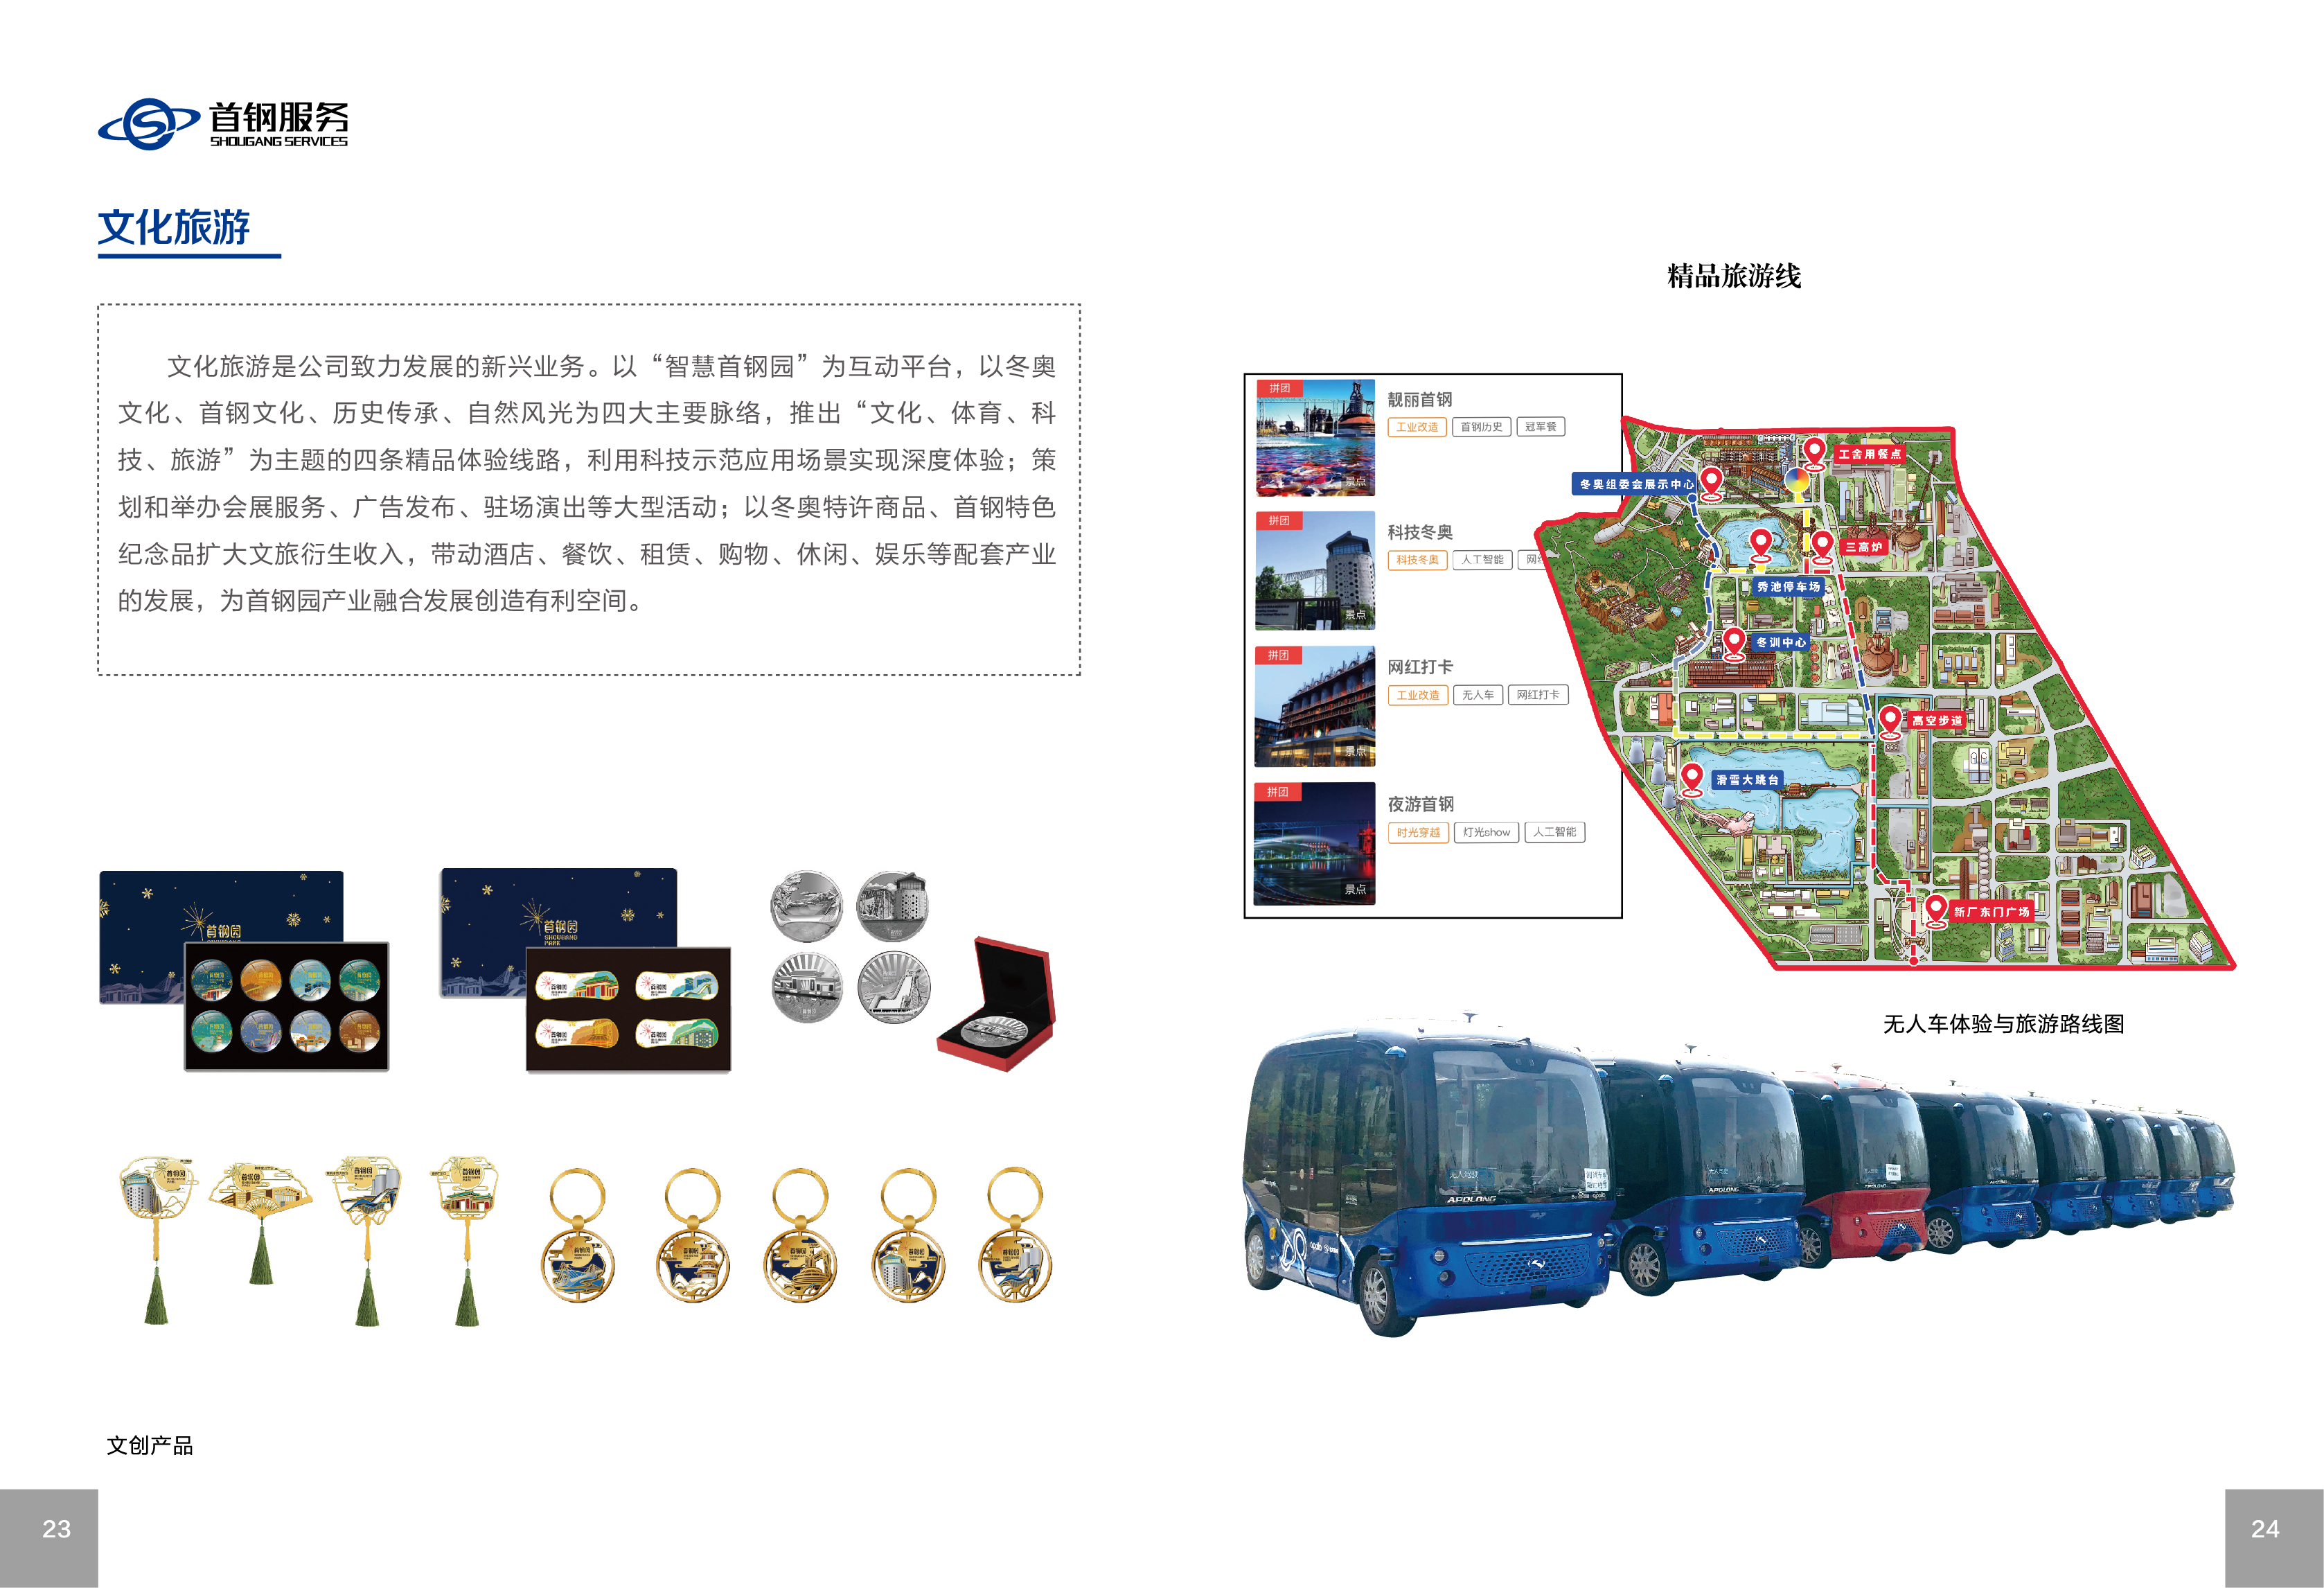 北京首钢园区综合服务有限公司《企业文化手册》